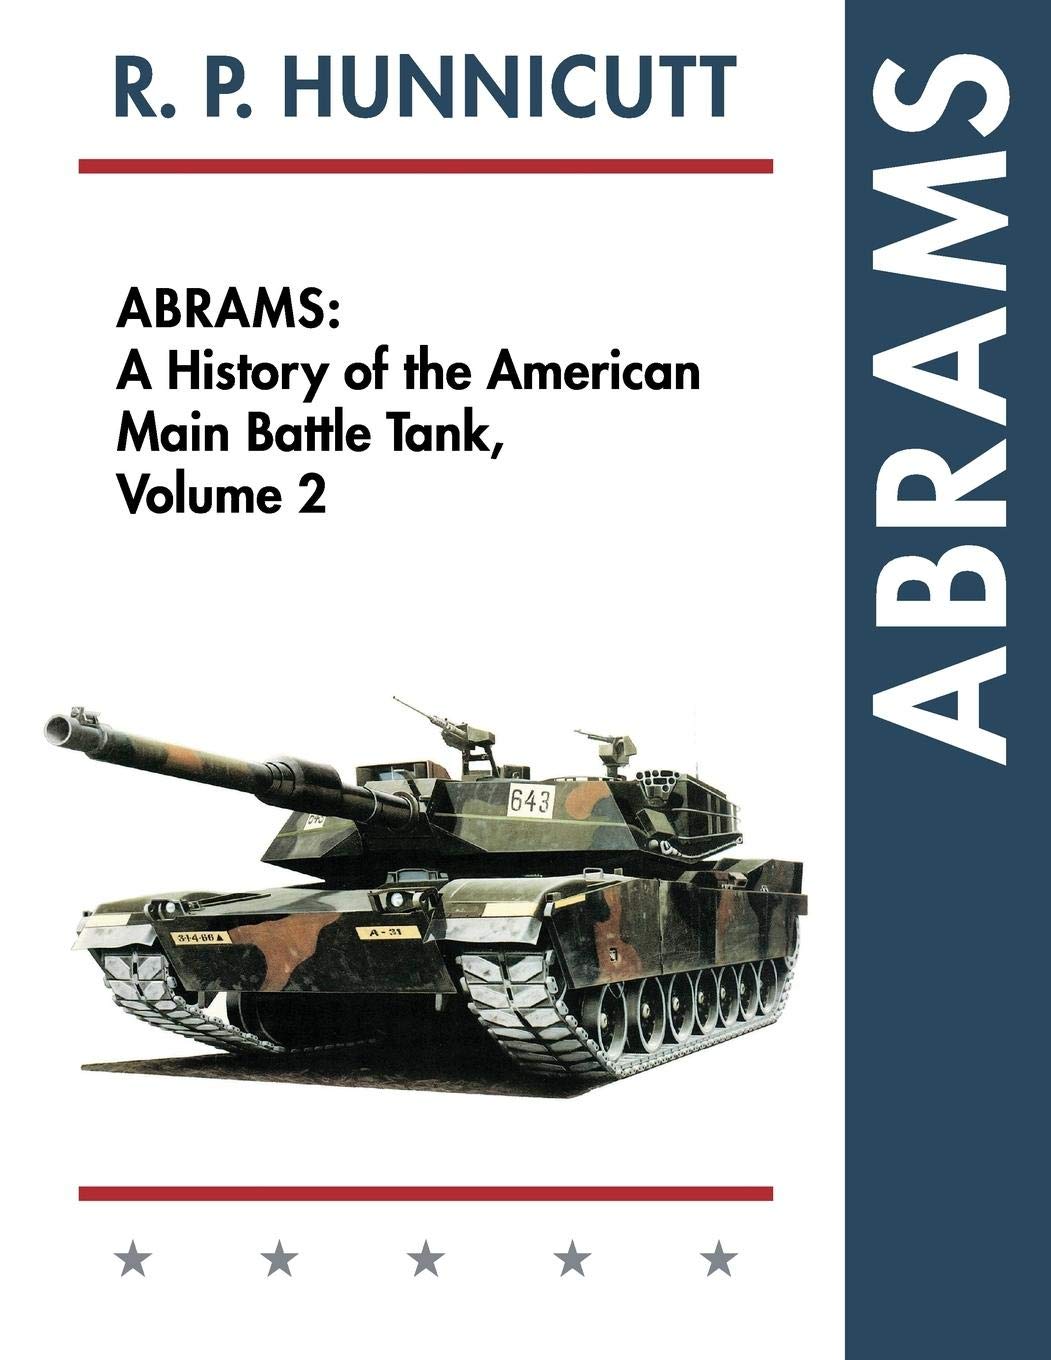 《艾布拉姆斯》这本对我来说最大的乐趣就是了解冷战时期美国研发的各种稀奇古怪的战车